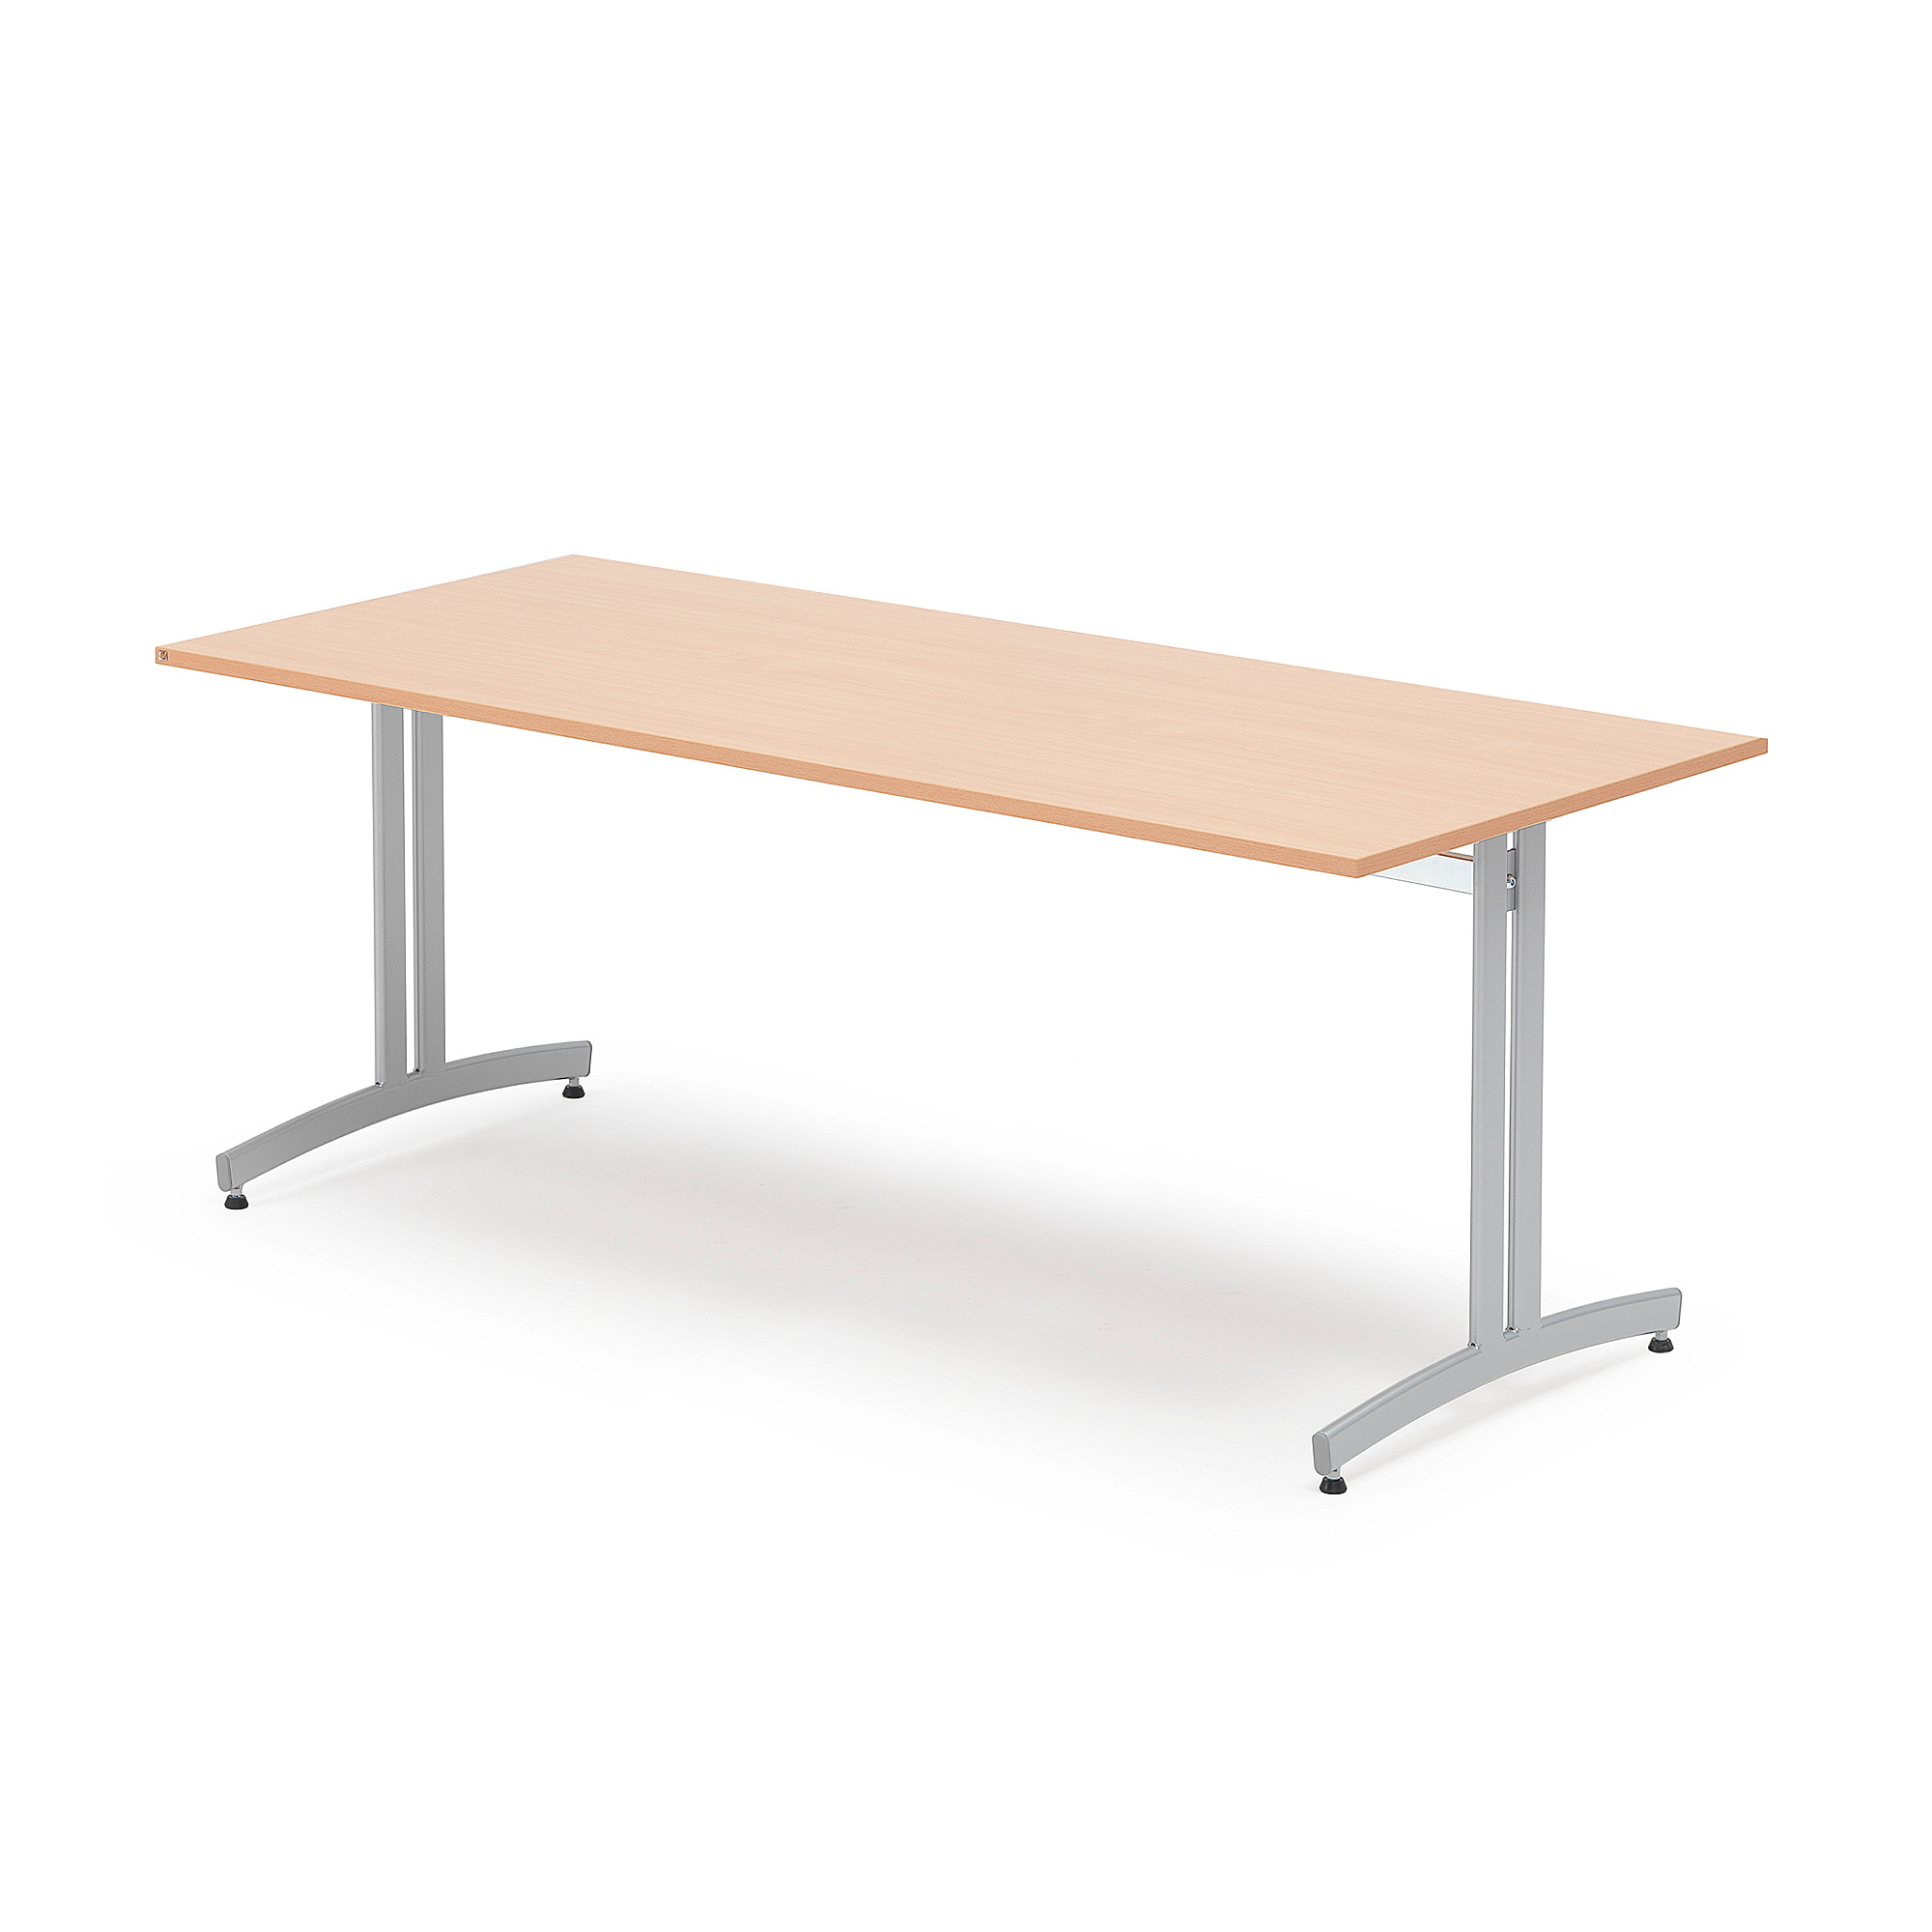 Stůl SANNA, 1800x800x720 mm, stříbrná/buk